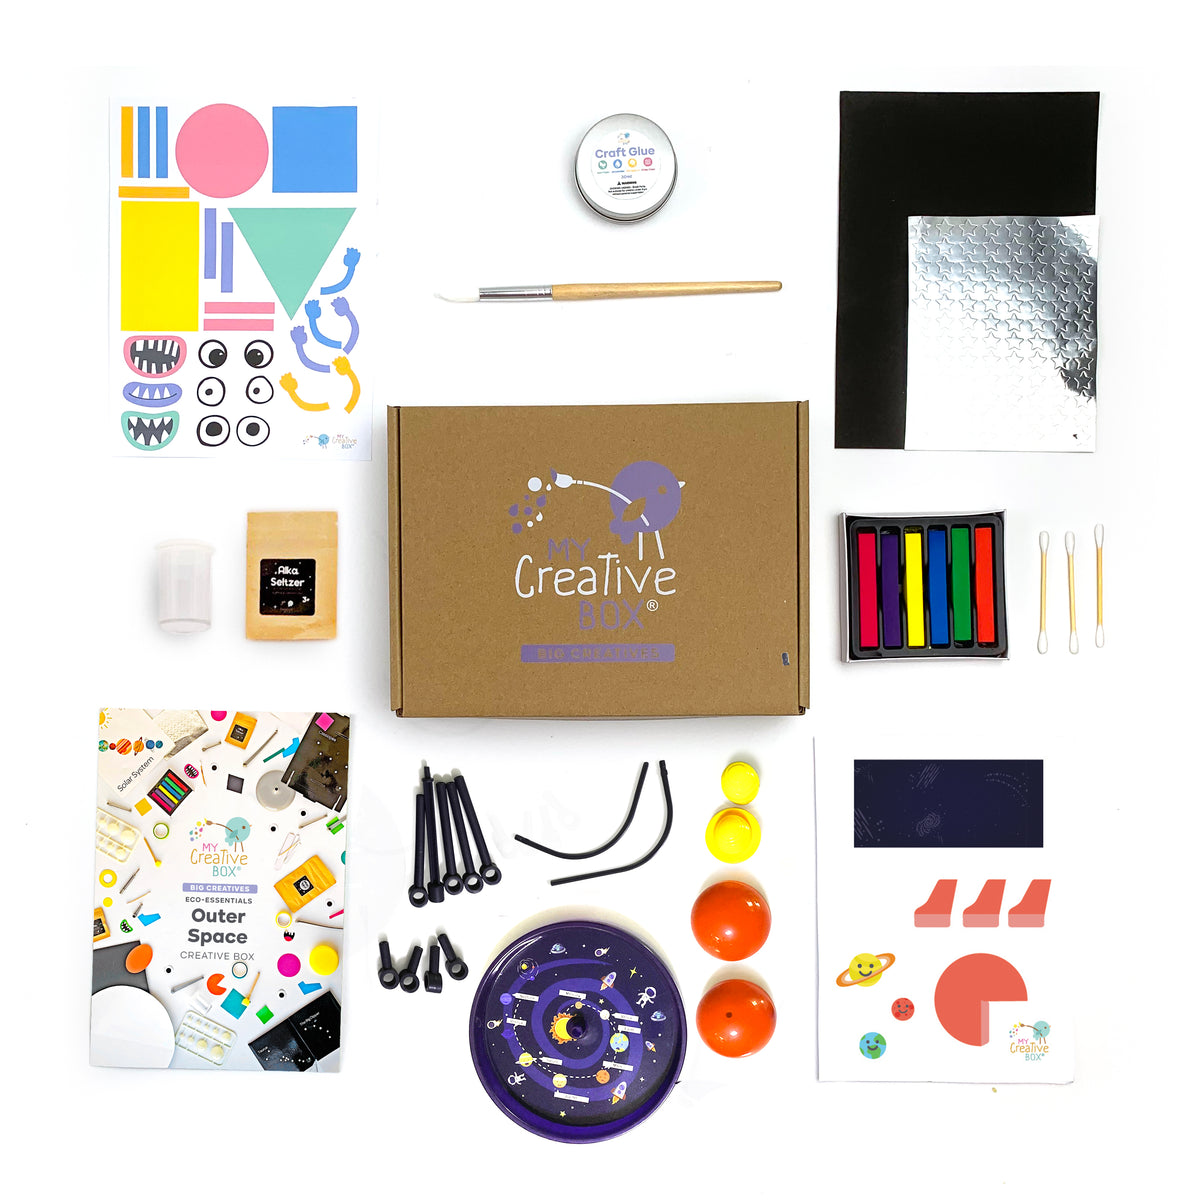 8 to 10 Years | Mini Creative Kit Gift Bundle | 4 Box Set